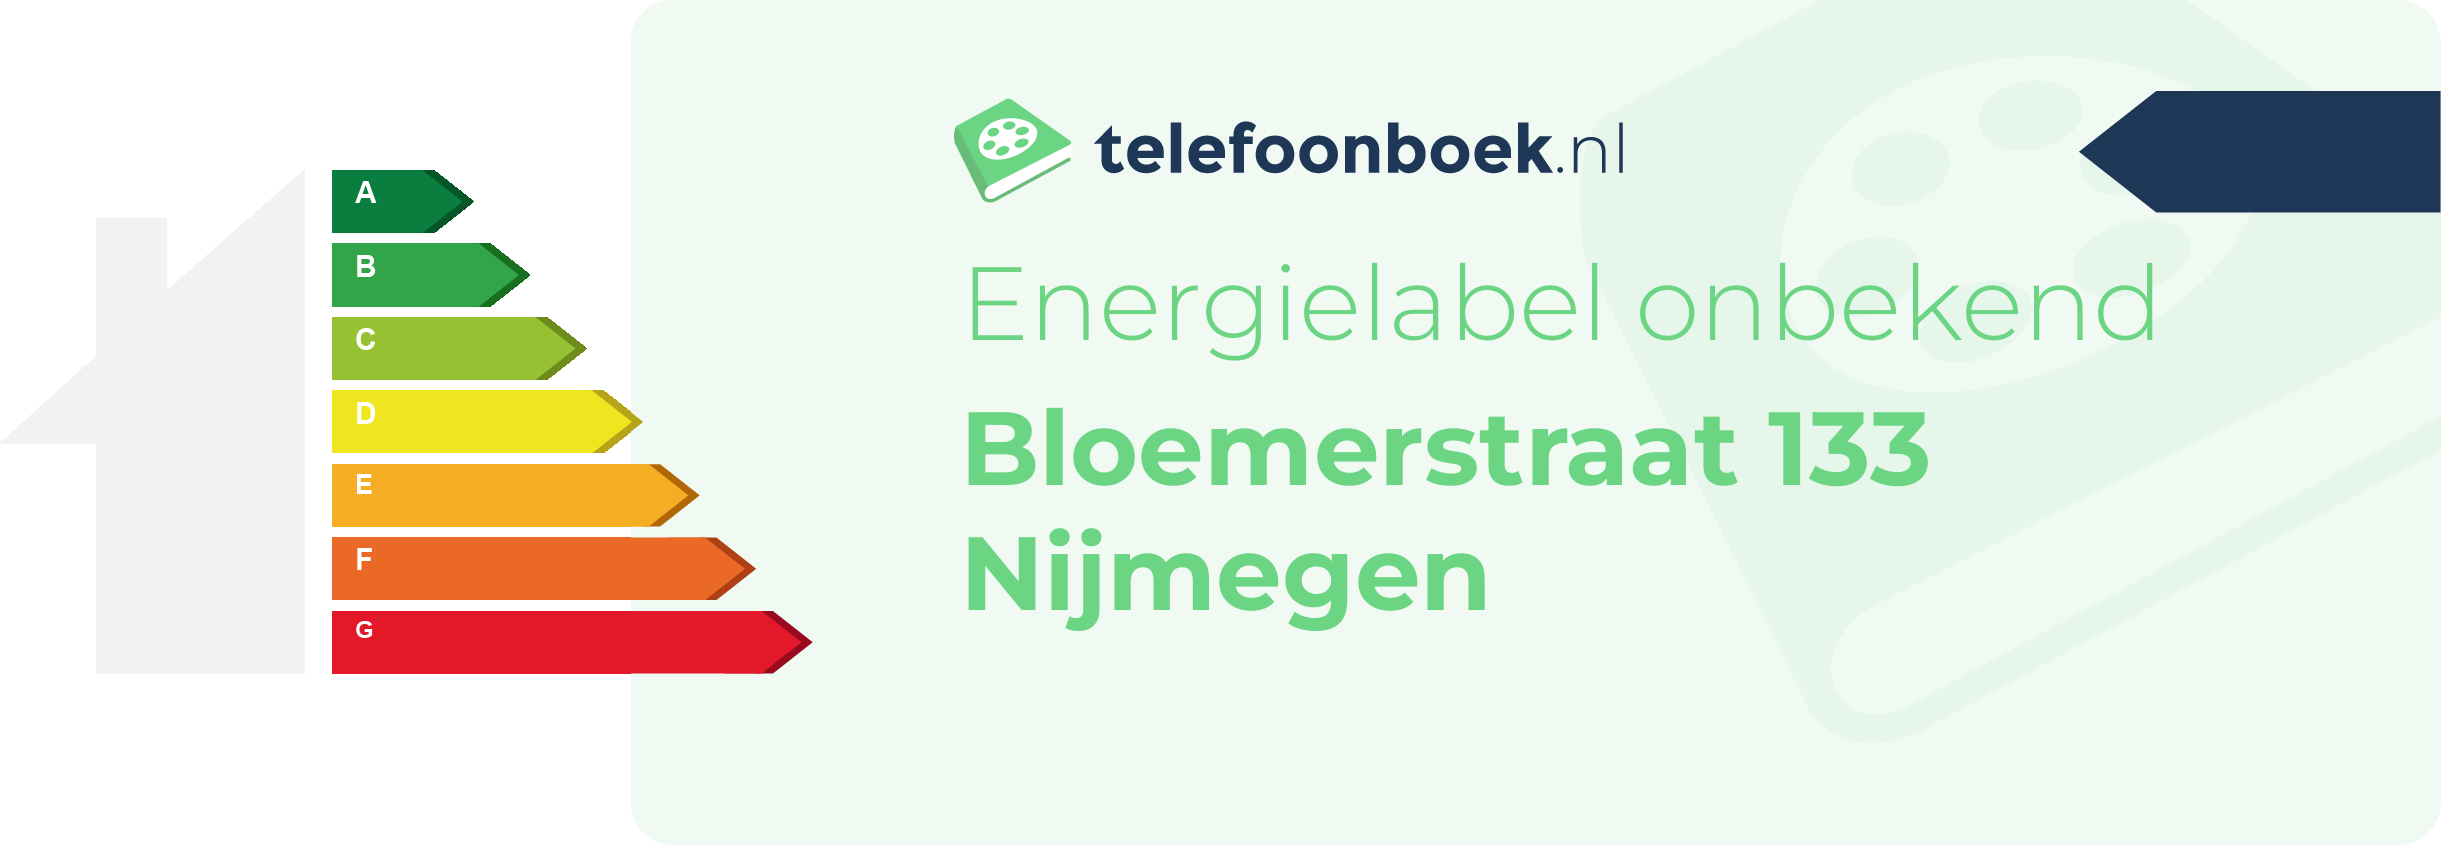 Energielabel Bloemerstraat 133 Nijmegen